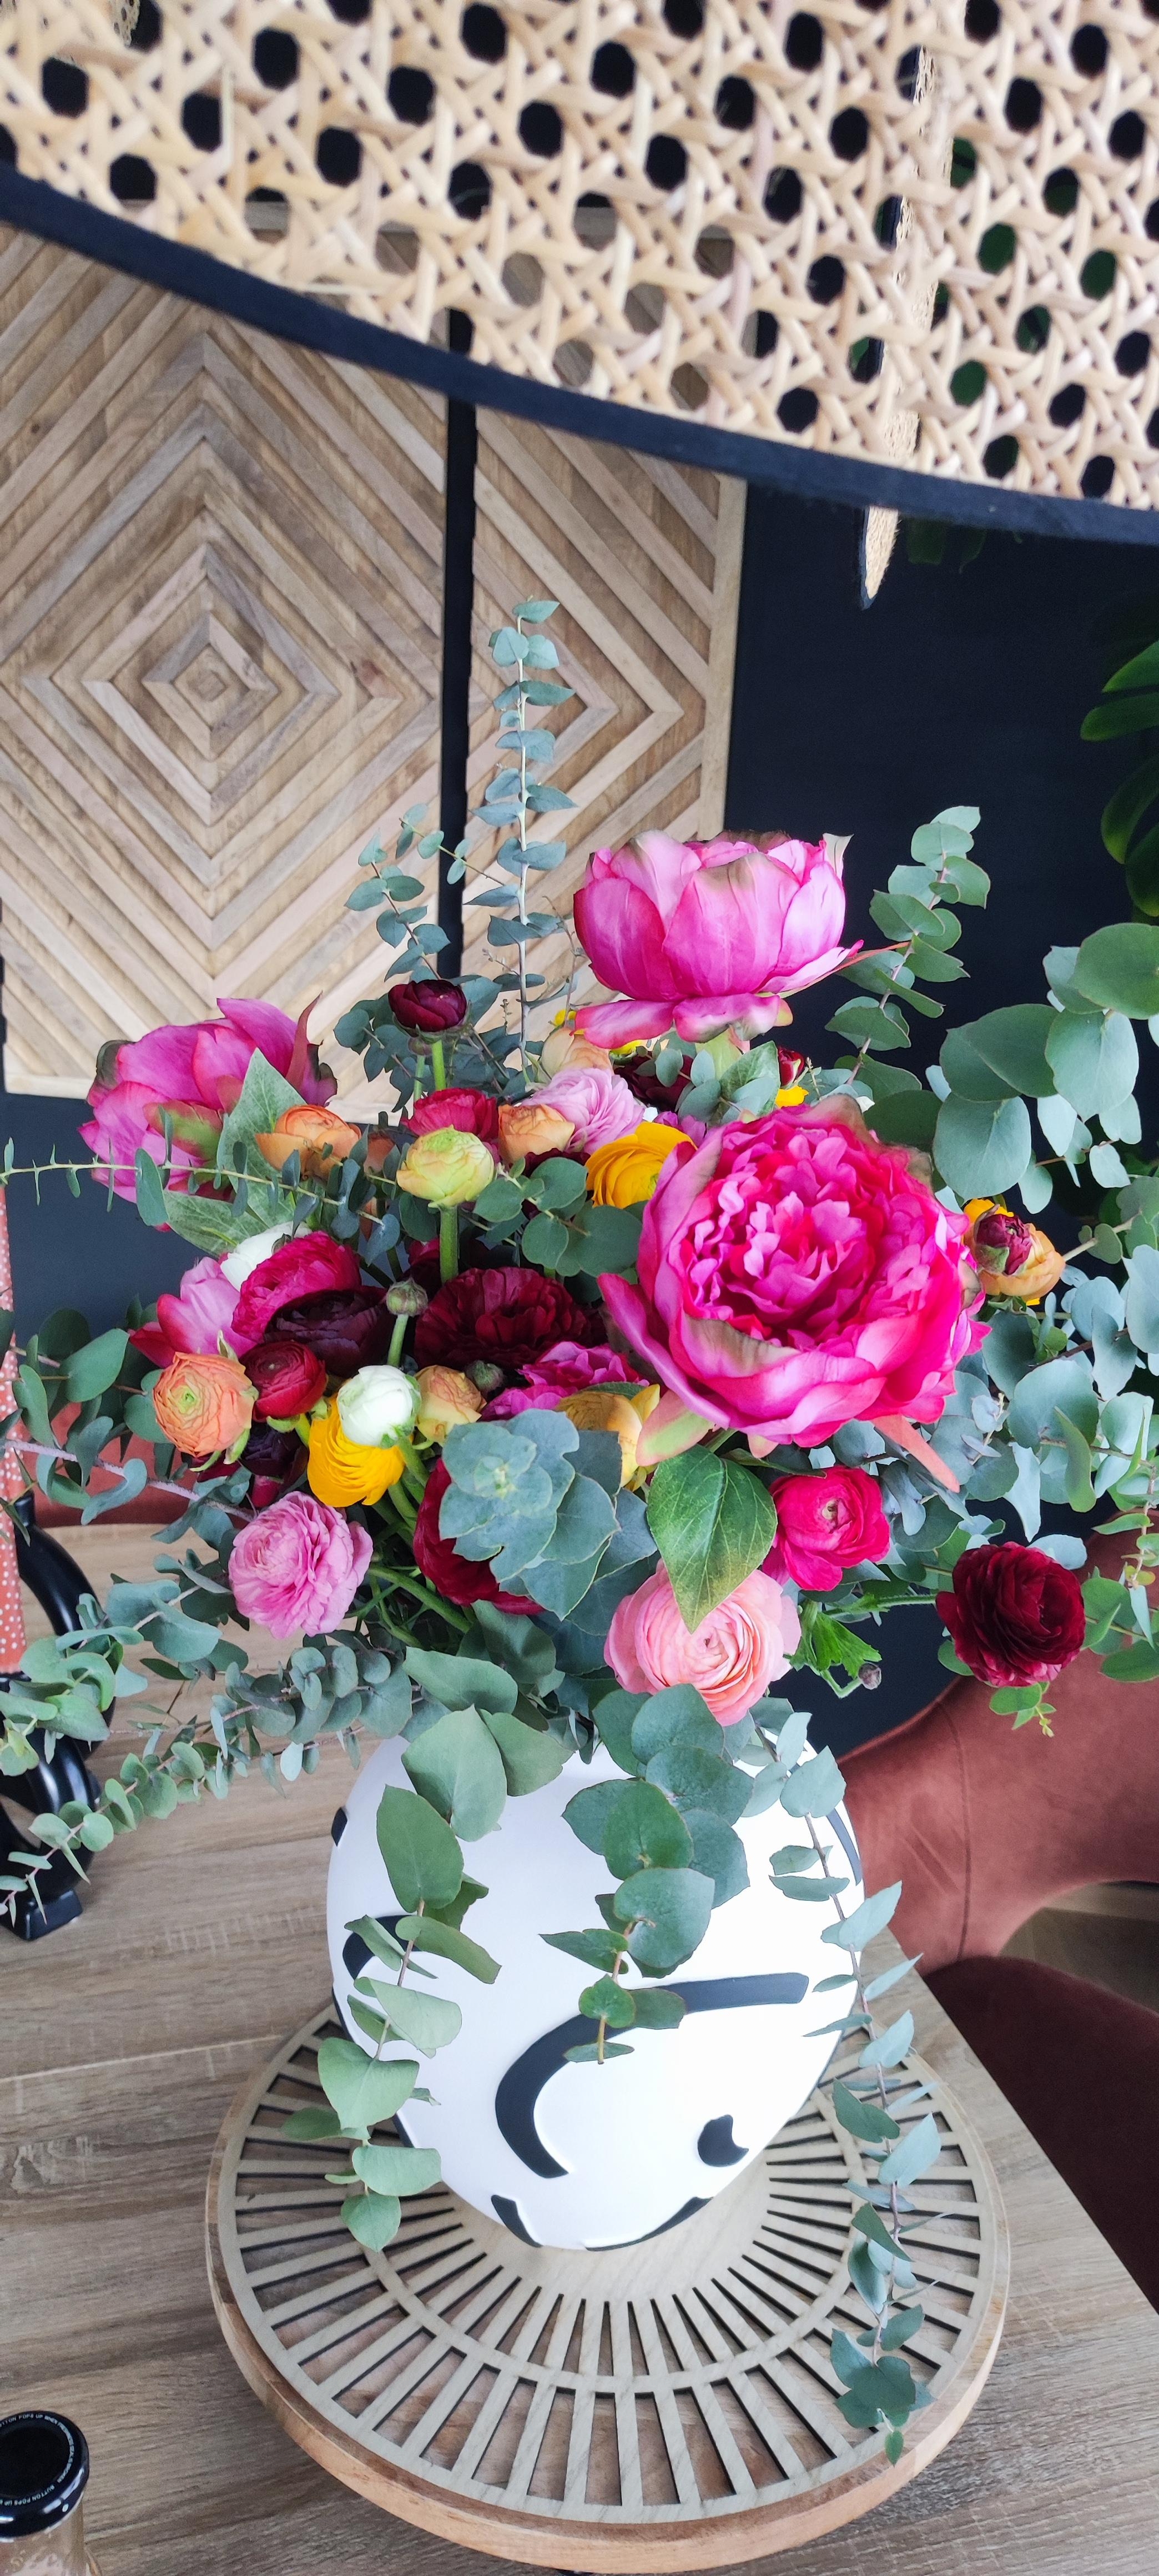 #spring #blumenliebe #flowers #blumenstrauss #vase #living #interior #dekor #dekoration #home #pink #fresh #plant #color